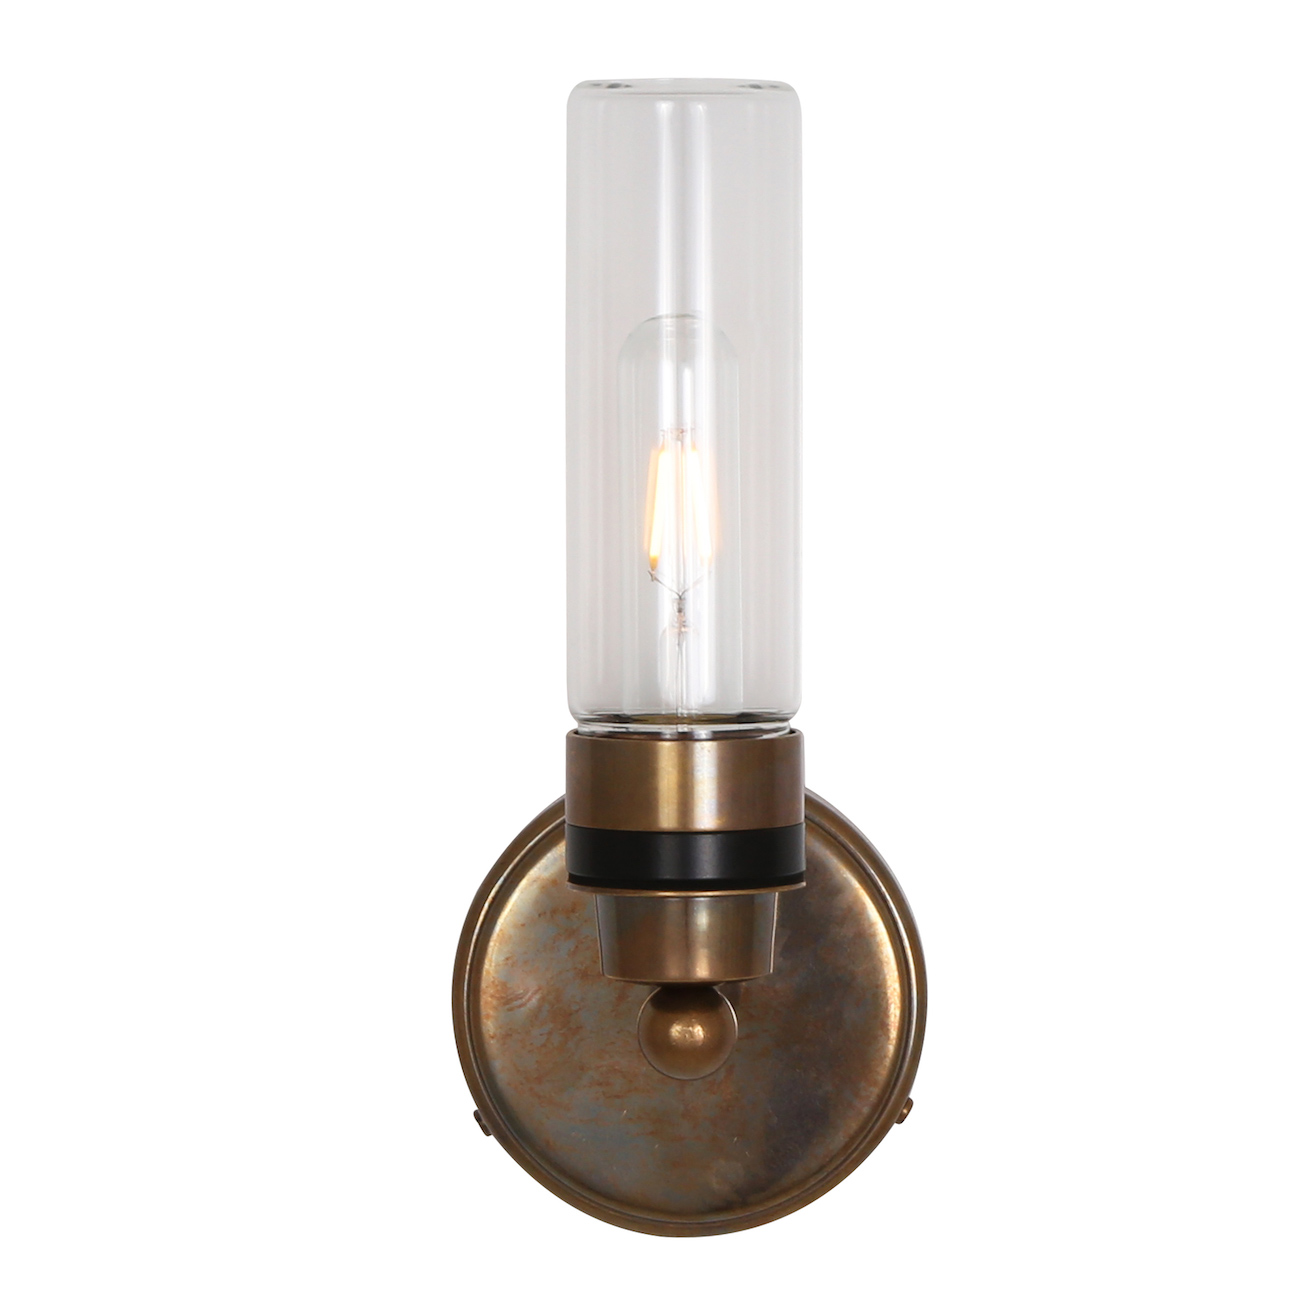 Badezimmer-Wandlampe mit klarem oder prismatischem Glaszylinder, IP65: Alt-Messing patiniert, klares Glas